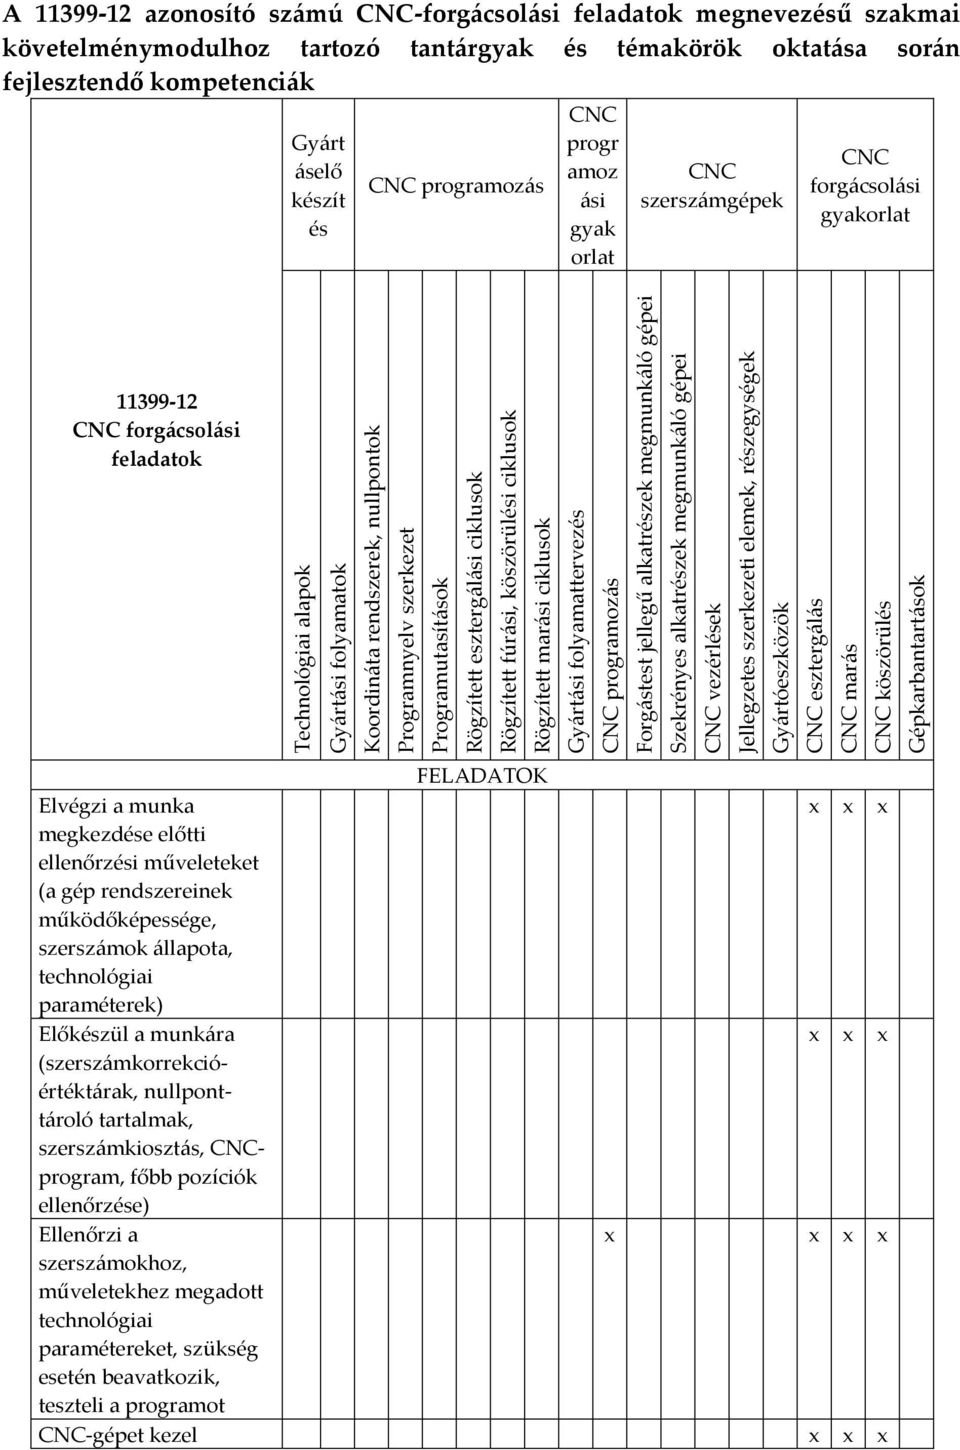 részegységek Gyártóeszközök CNC esztergálás CNC marás CNC köszörülés Gépkarbantartások A 11399-12 azonosító számú CNC-forgácsolási feladatok megnevezésű szakmai követelménymodulhoz tartozó tantárgyak